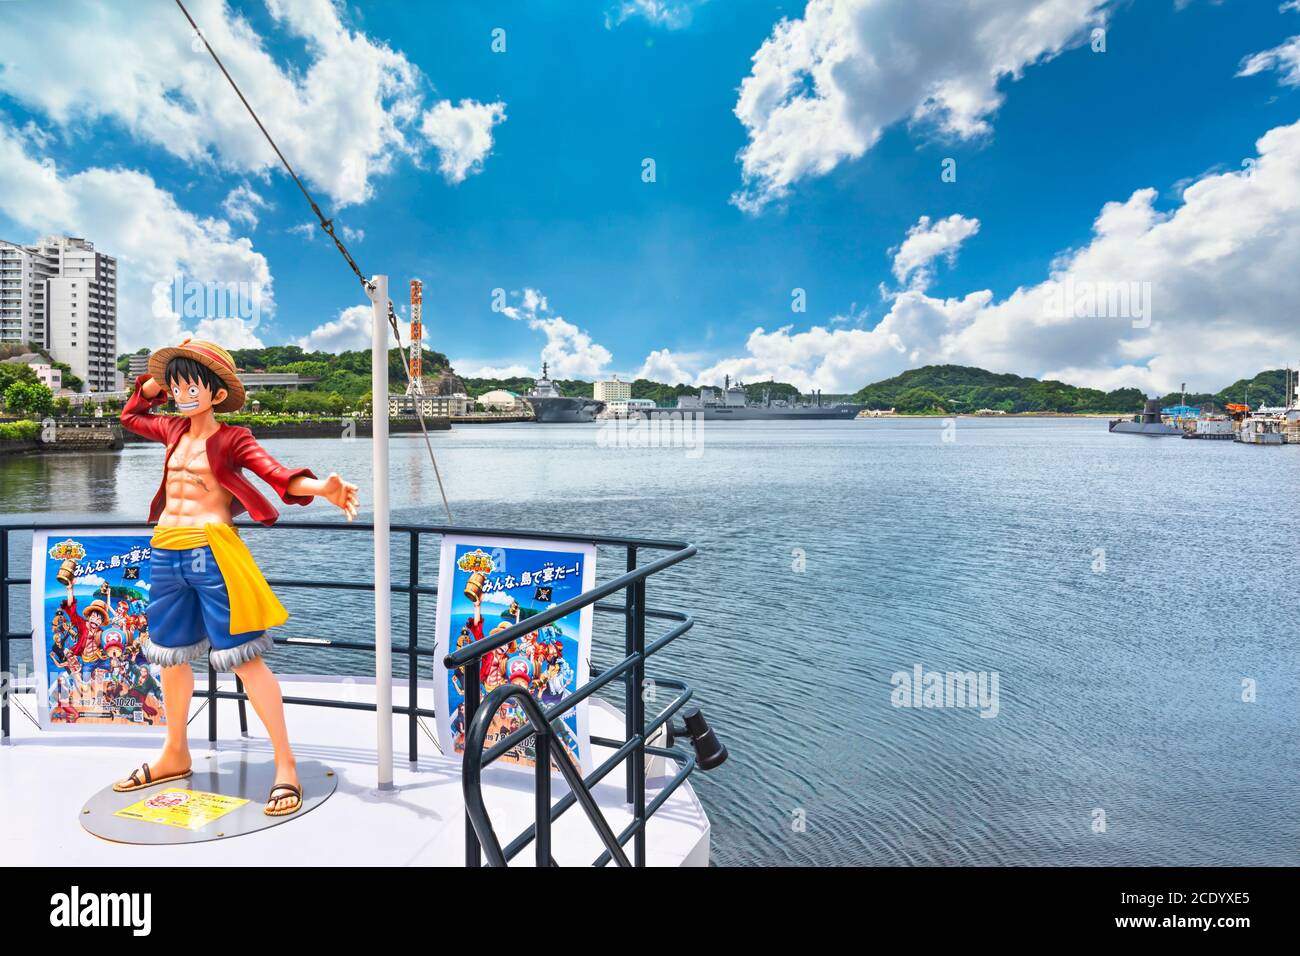 yokosuka, japon - juillet 19 2020: Vue grand angle de la figurine de taille réelle du héros Monkey D. Luffy de la manga One Piece par Eiichiro Oda standin Banque D'Images